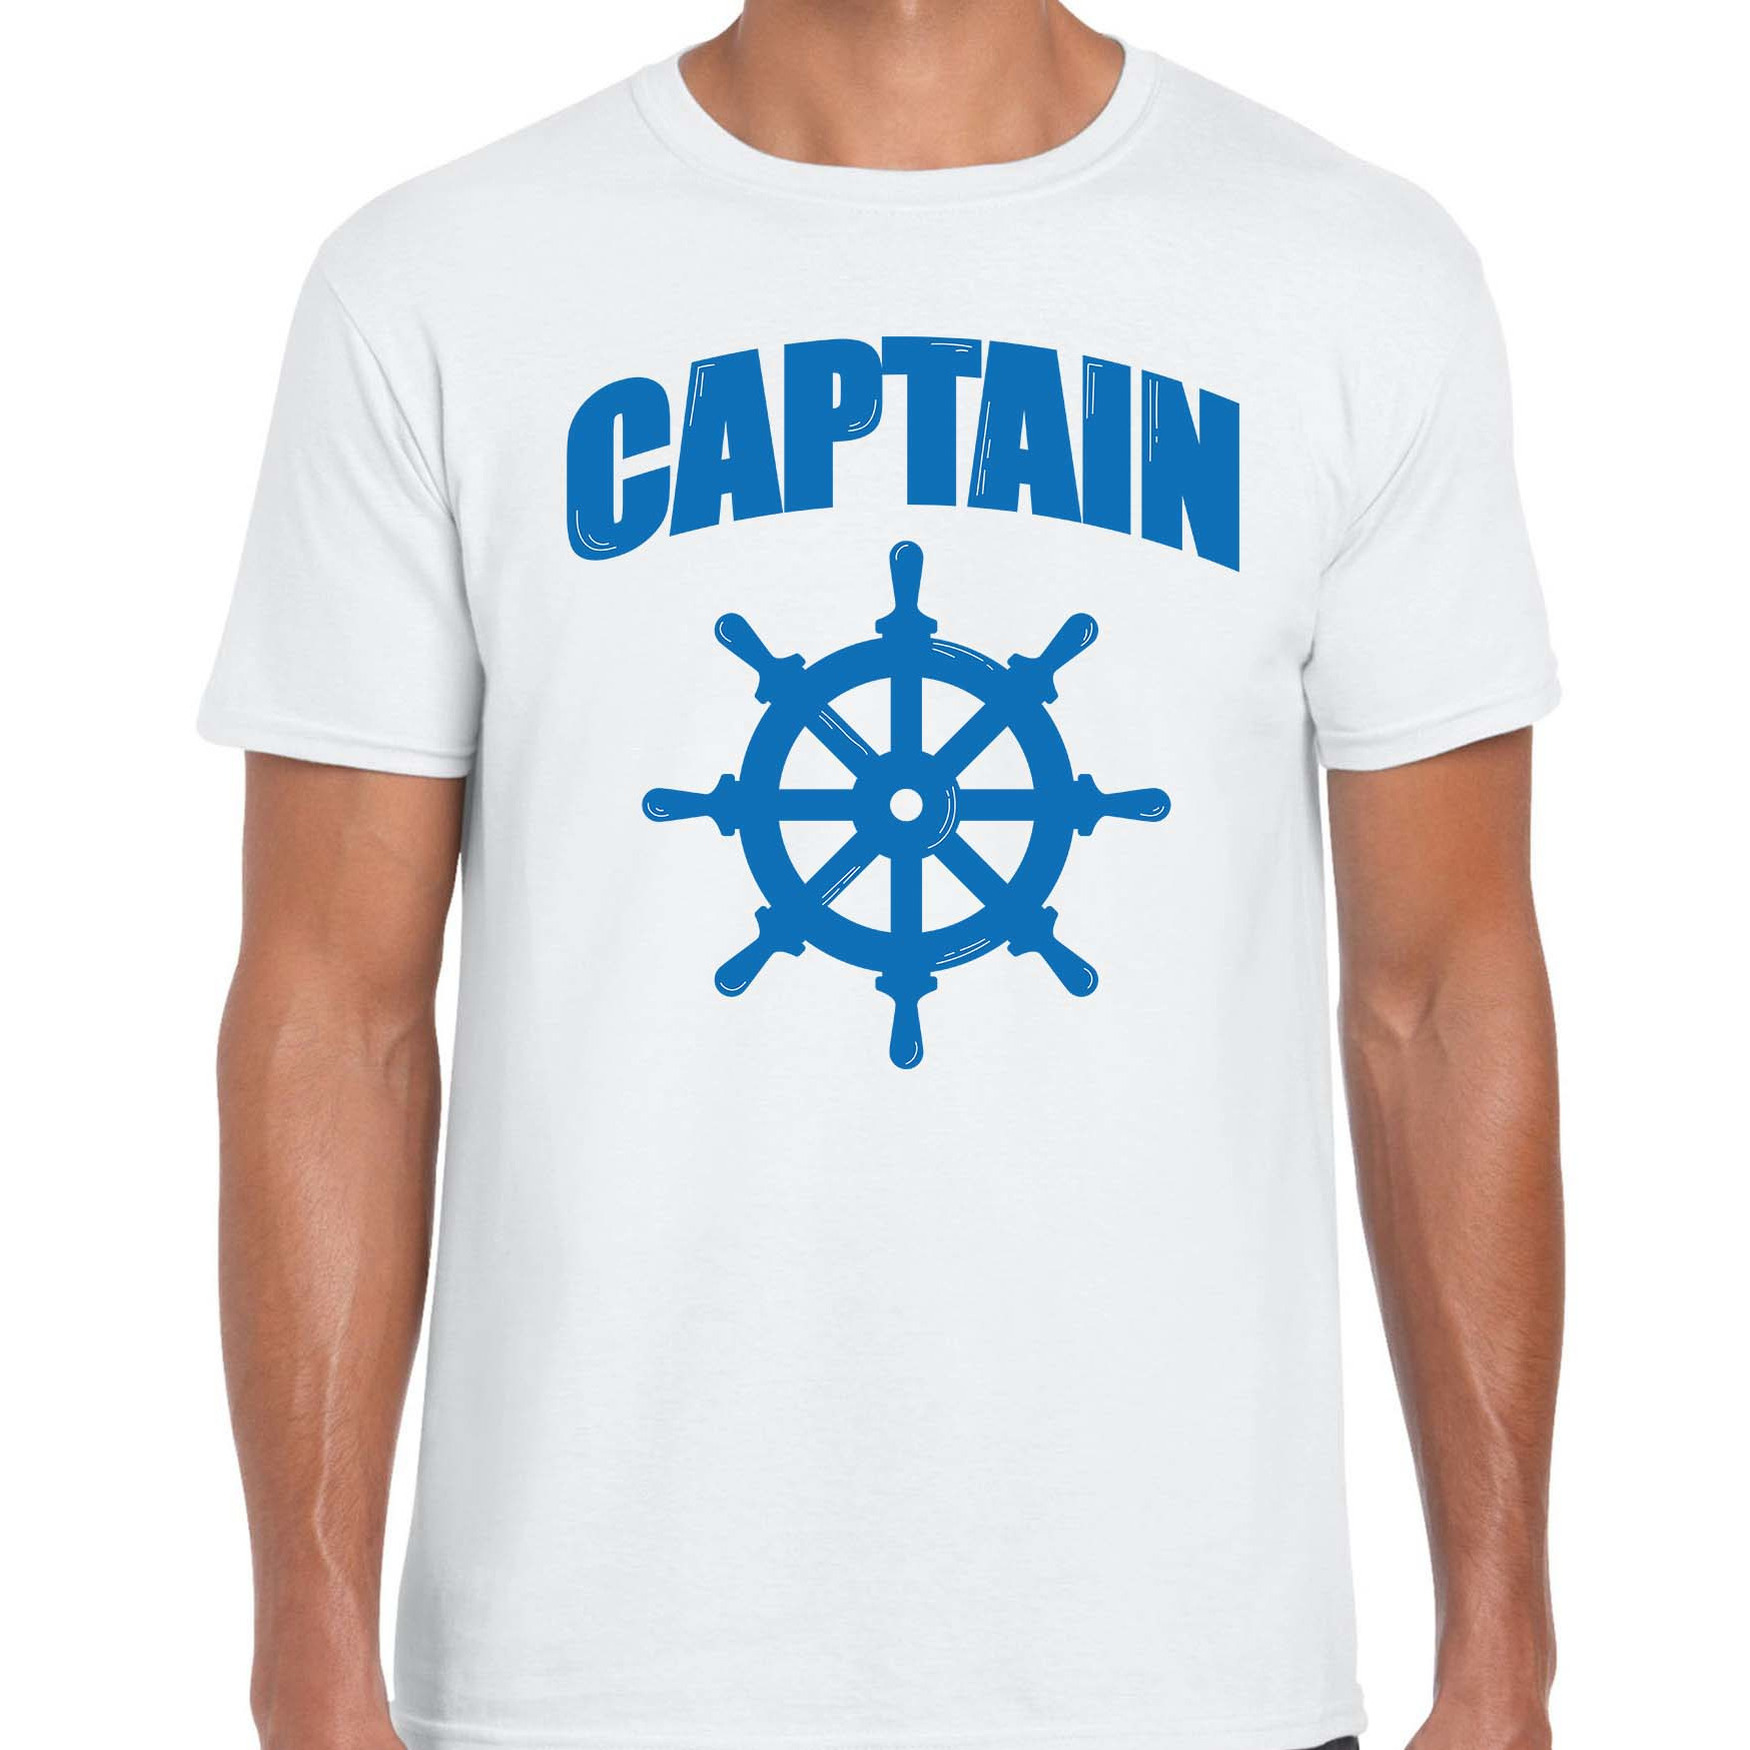 Captain-kapitein met roer-stuur verkleed t-shirt wit voor heren